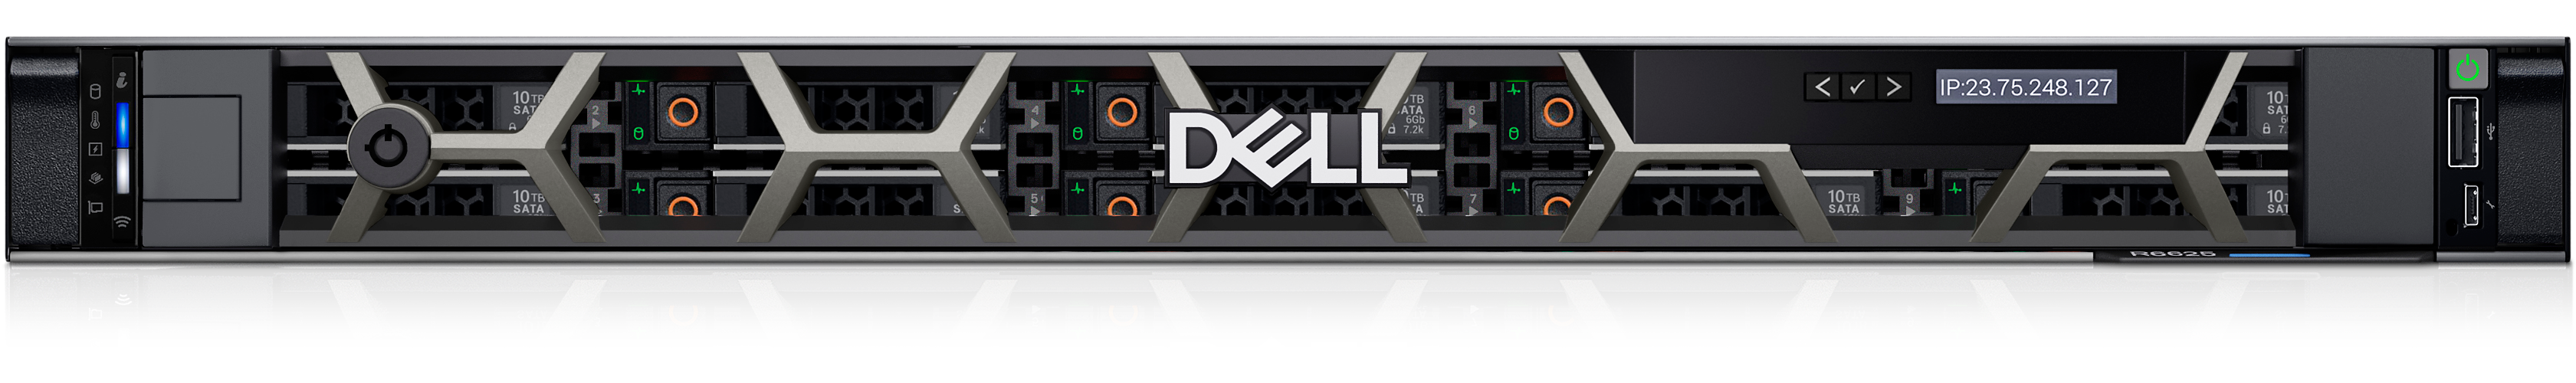 Dell PowerEdge R6625-rackserver